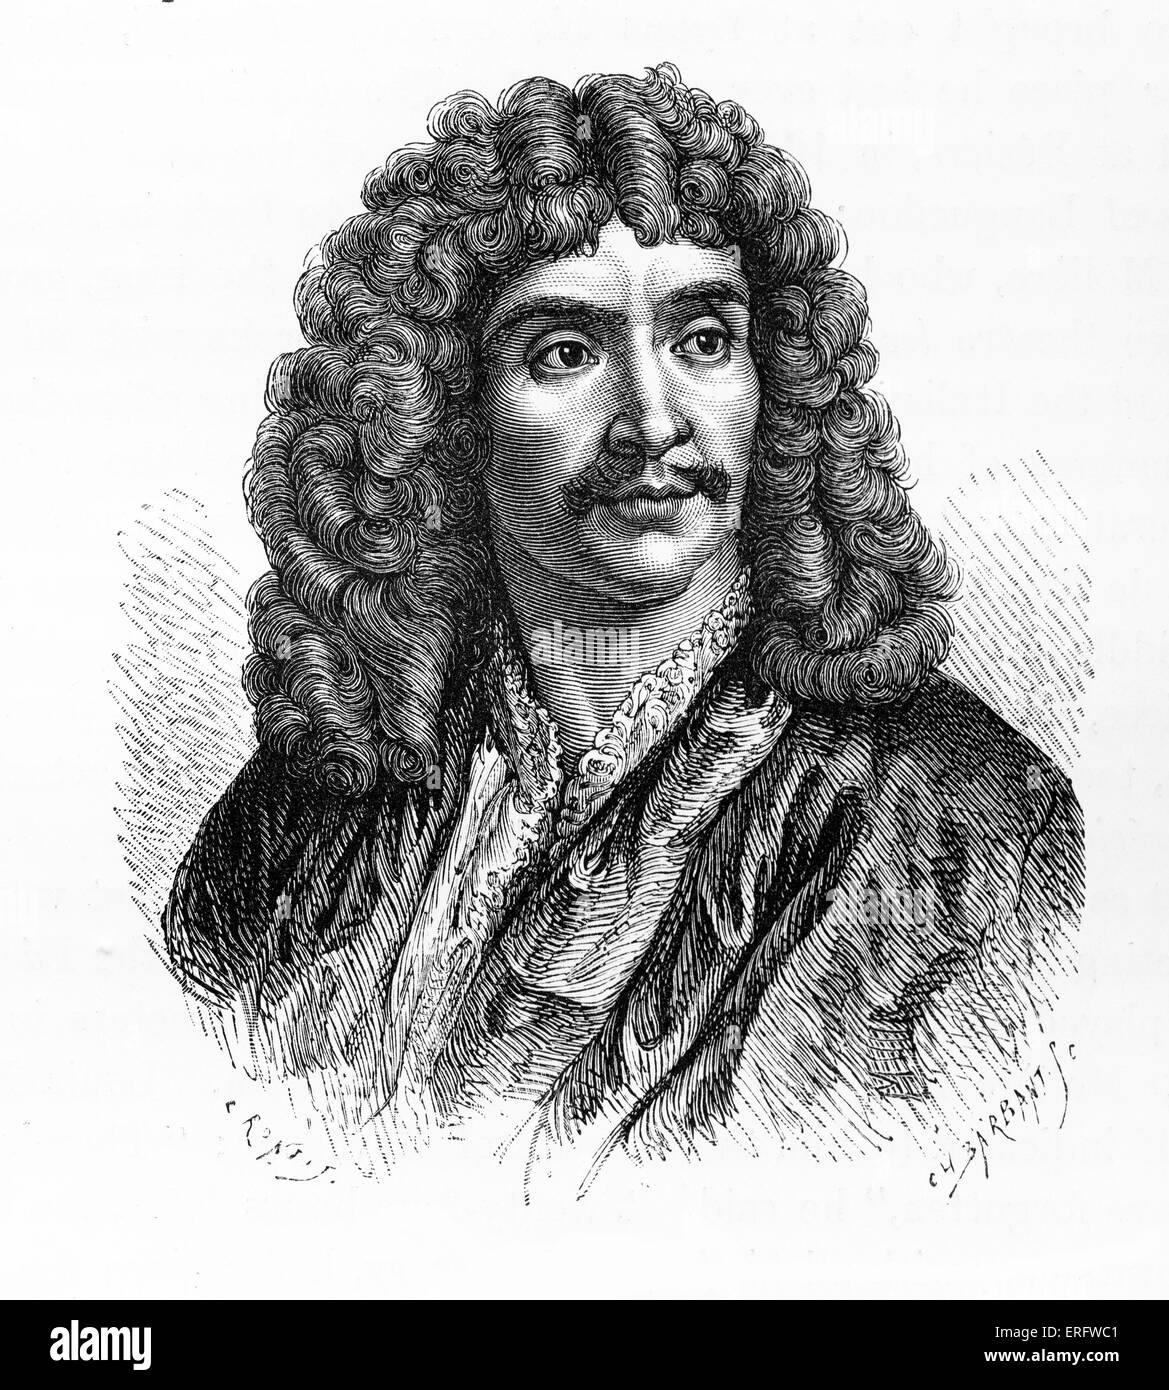 Jean-Baptiste Poquelin, auch bekannt unter seinem Künstlernamen, Molière, war ein französischer Dramatiker und Schauspieler. Molière:1622 – 1673. Stockfoto